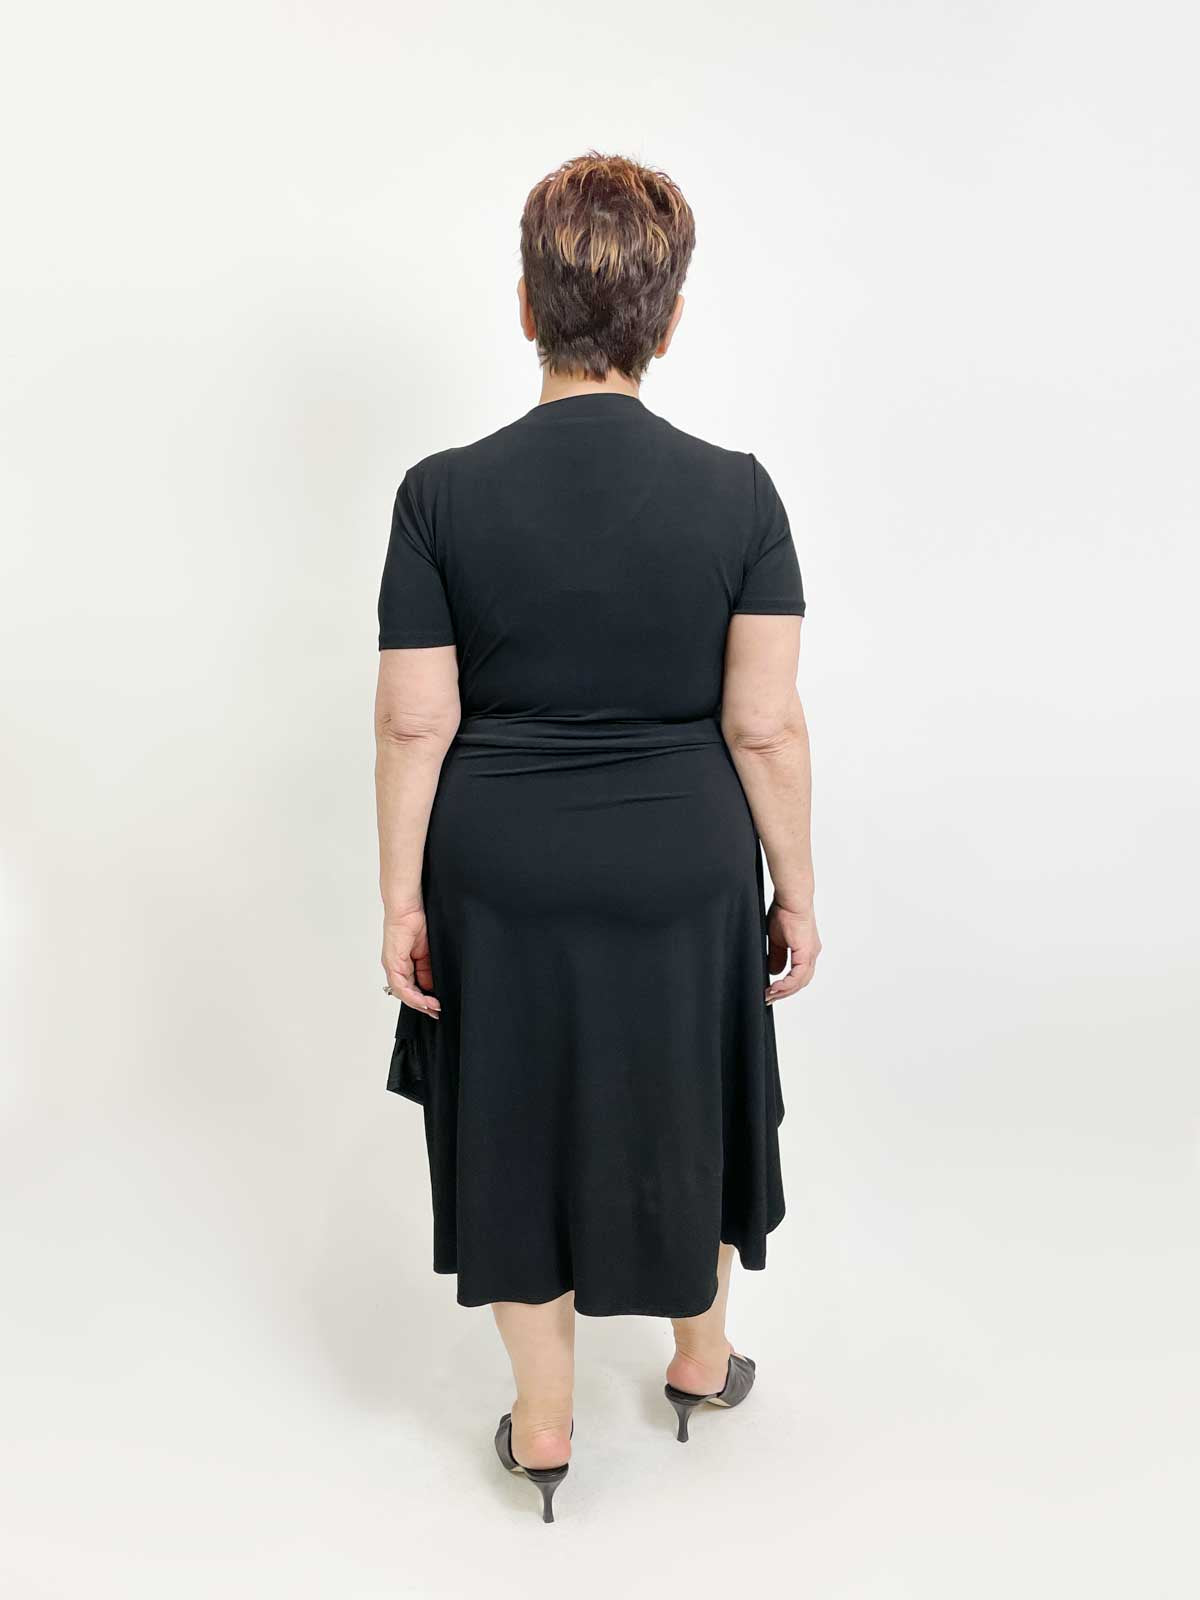 Kozan Drake Dress, Black Vogue - Statement Boutique